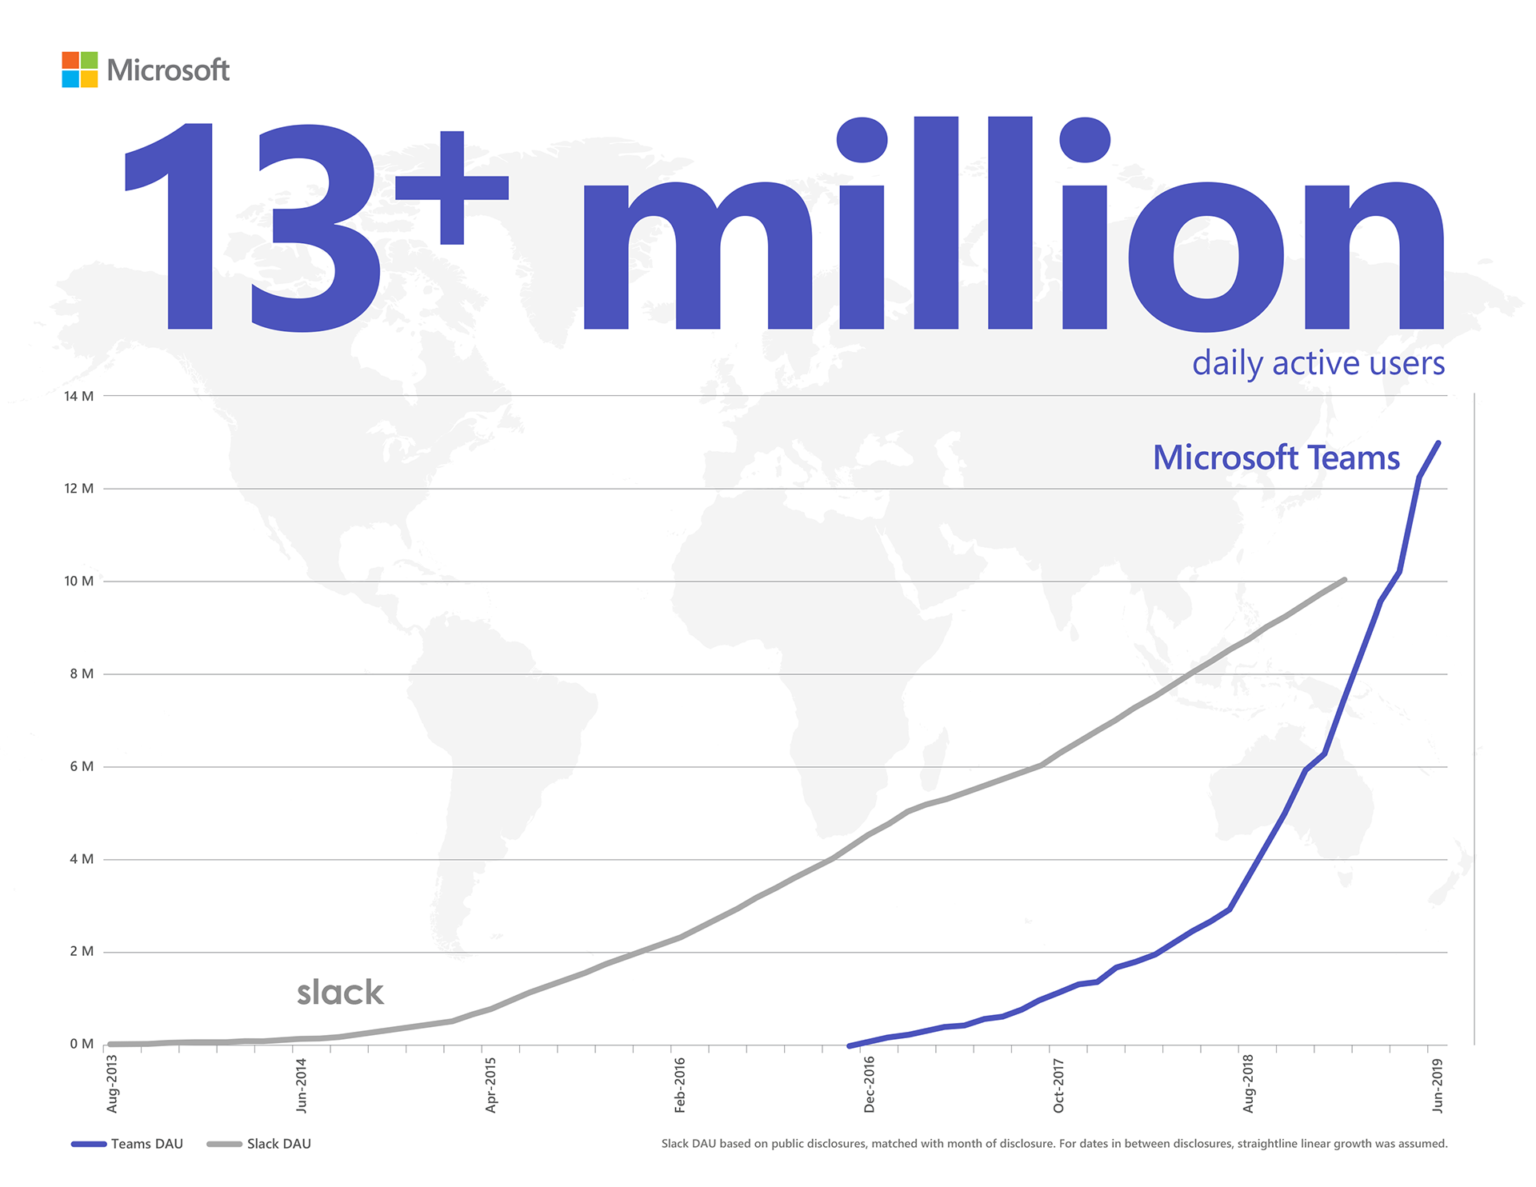 信息图显示 Microsoft Teams 的日均活跃用户数量已超过 Slack，达到 1300 万+。Slack DAU 的数据基于公开披露的信息，并显示了披露月份。信息图假定在两次披露之间的时期数据呈直线式增长。